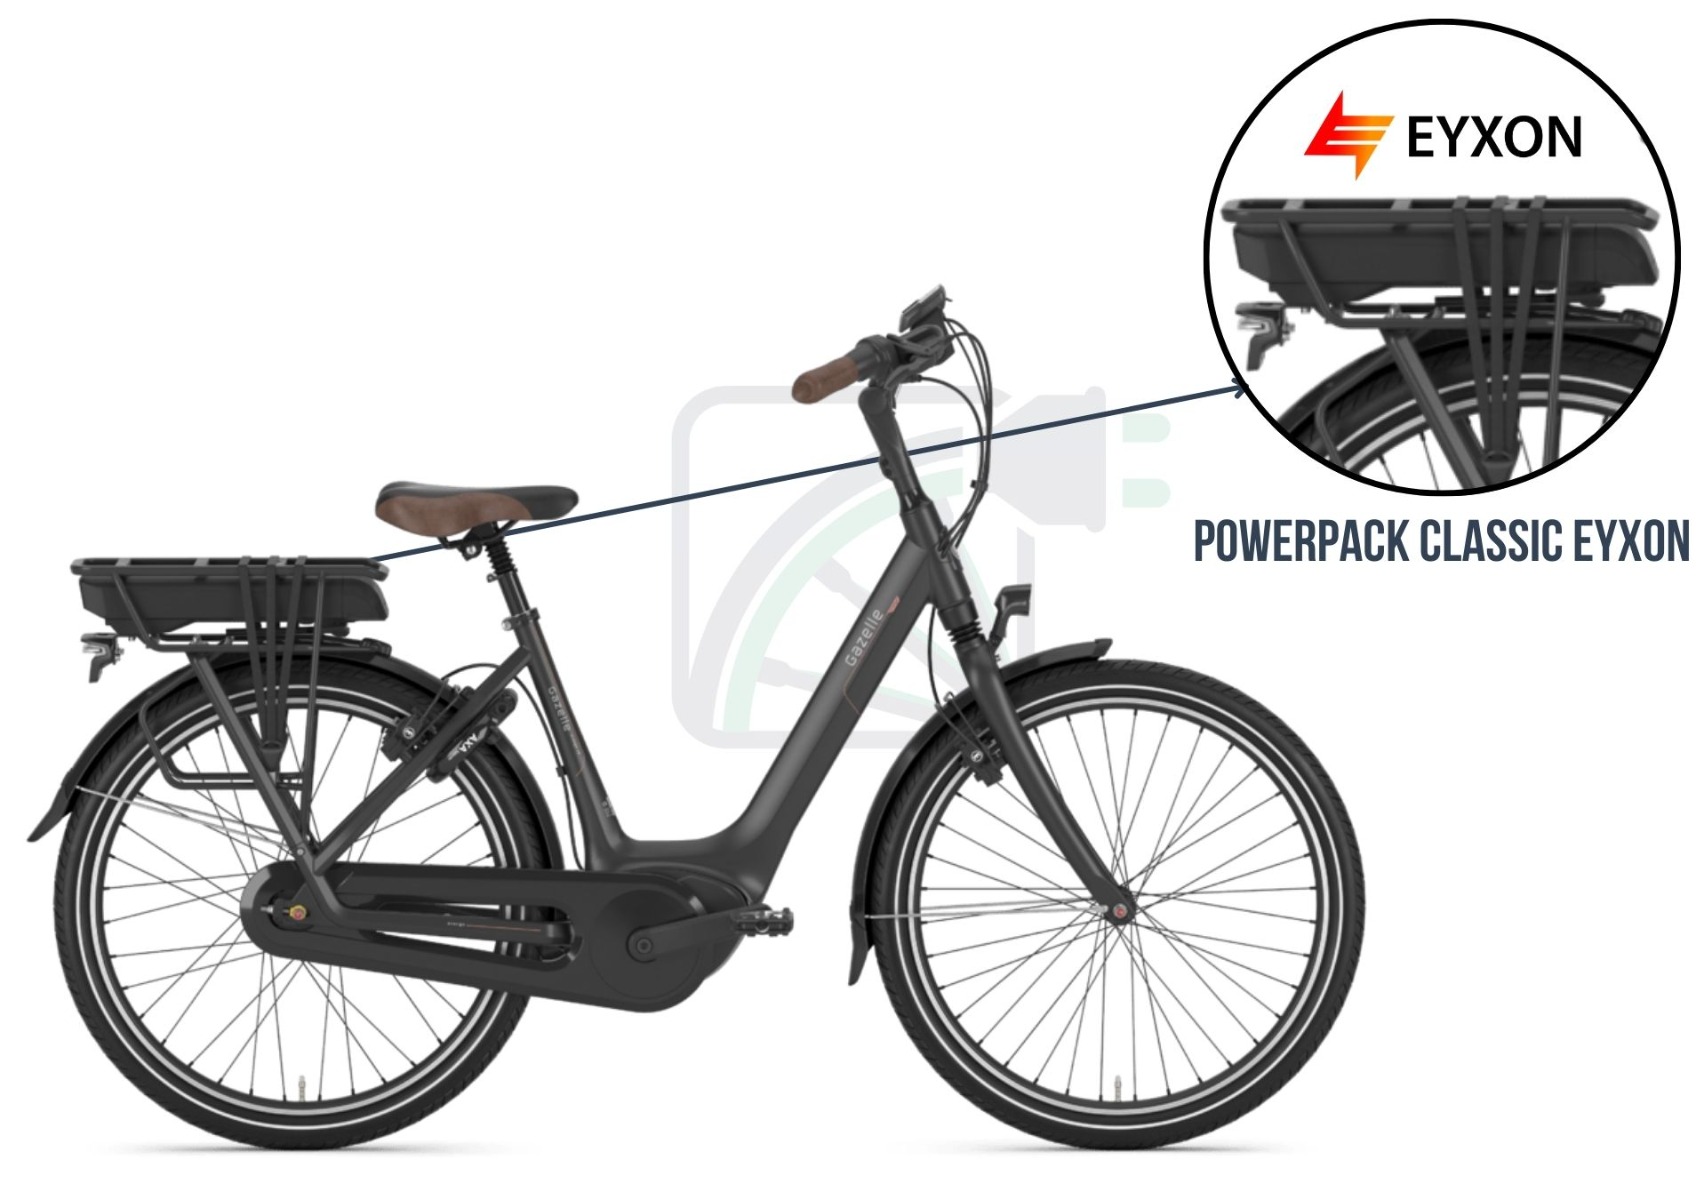 Une partie de l'image est agrandie et la batterie du vélo est mise en évidence. Les batteries possibles pour ce vélo électrique sont également mentionnées. Ce sont les batteries compatibles Bosch PowerPack Classic de EYXON.